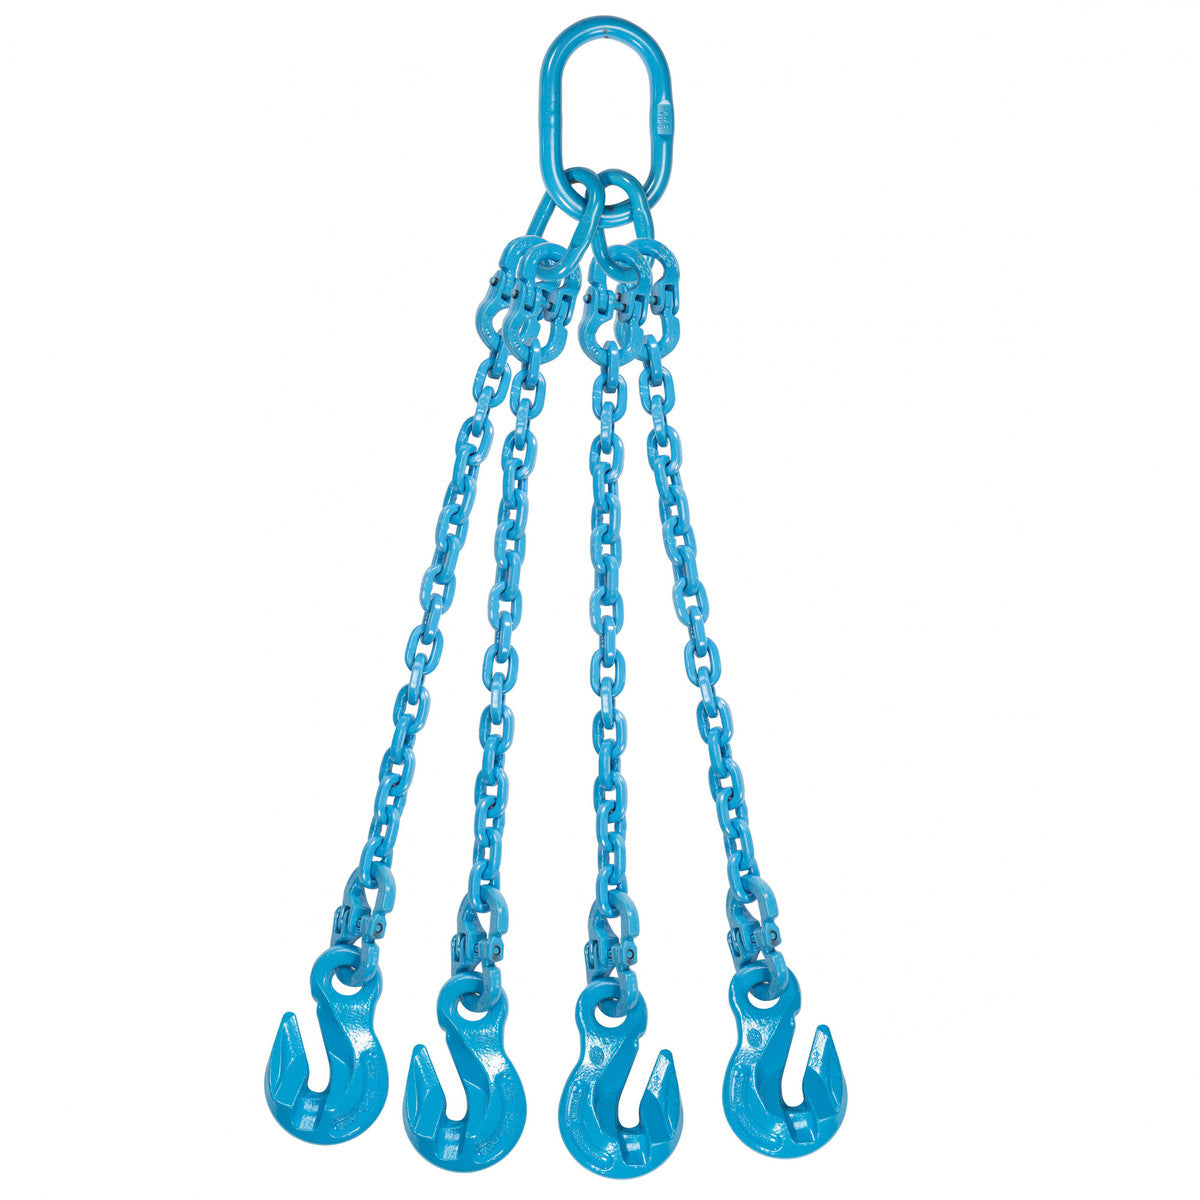 9/32" x 4' - Pewag 4 Leg Chain Sling w/ Grab Hooks - Grade 120